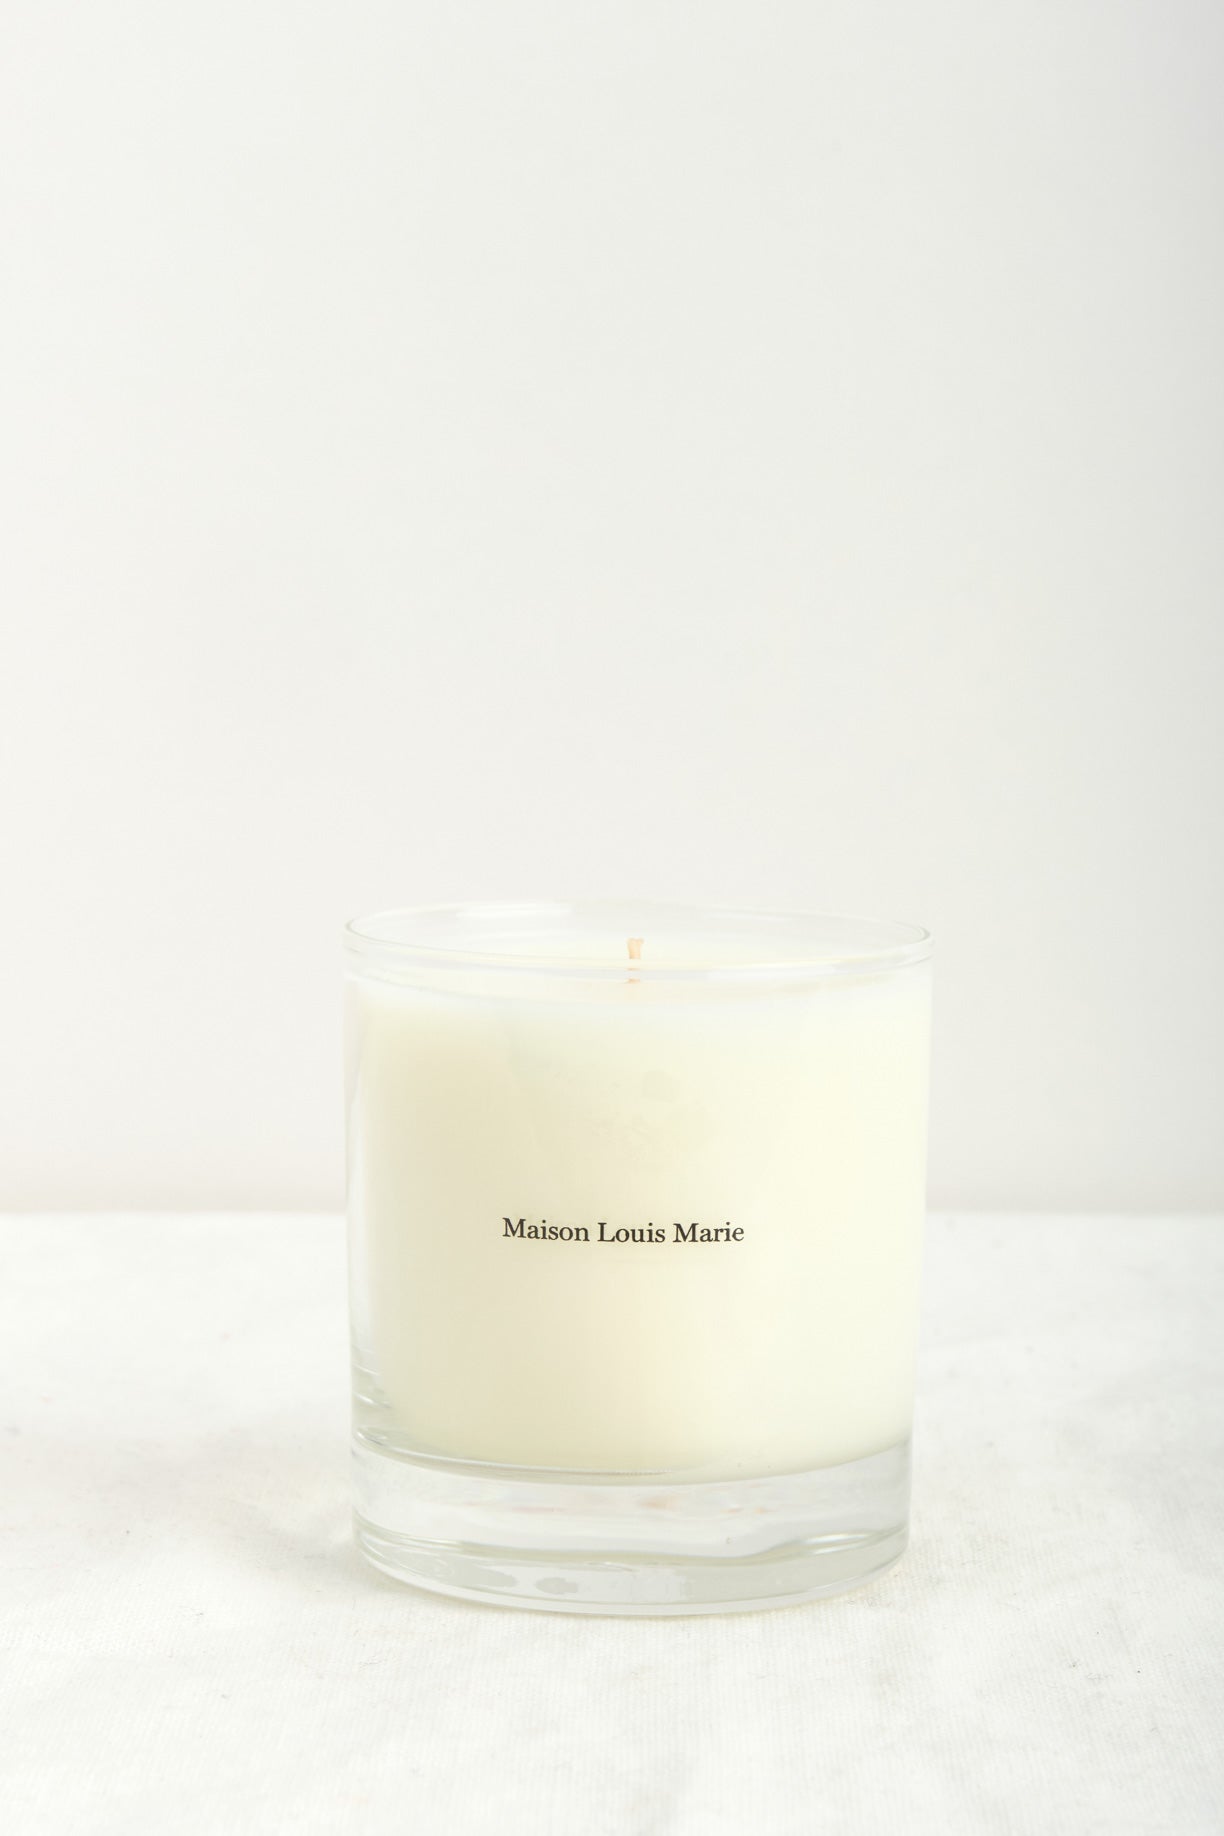 Maison Louis Marie Antidris Cassis Candle - 8.5 oz